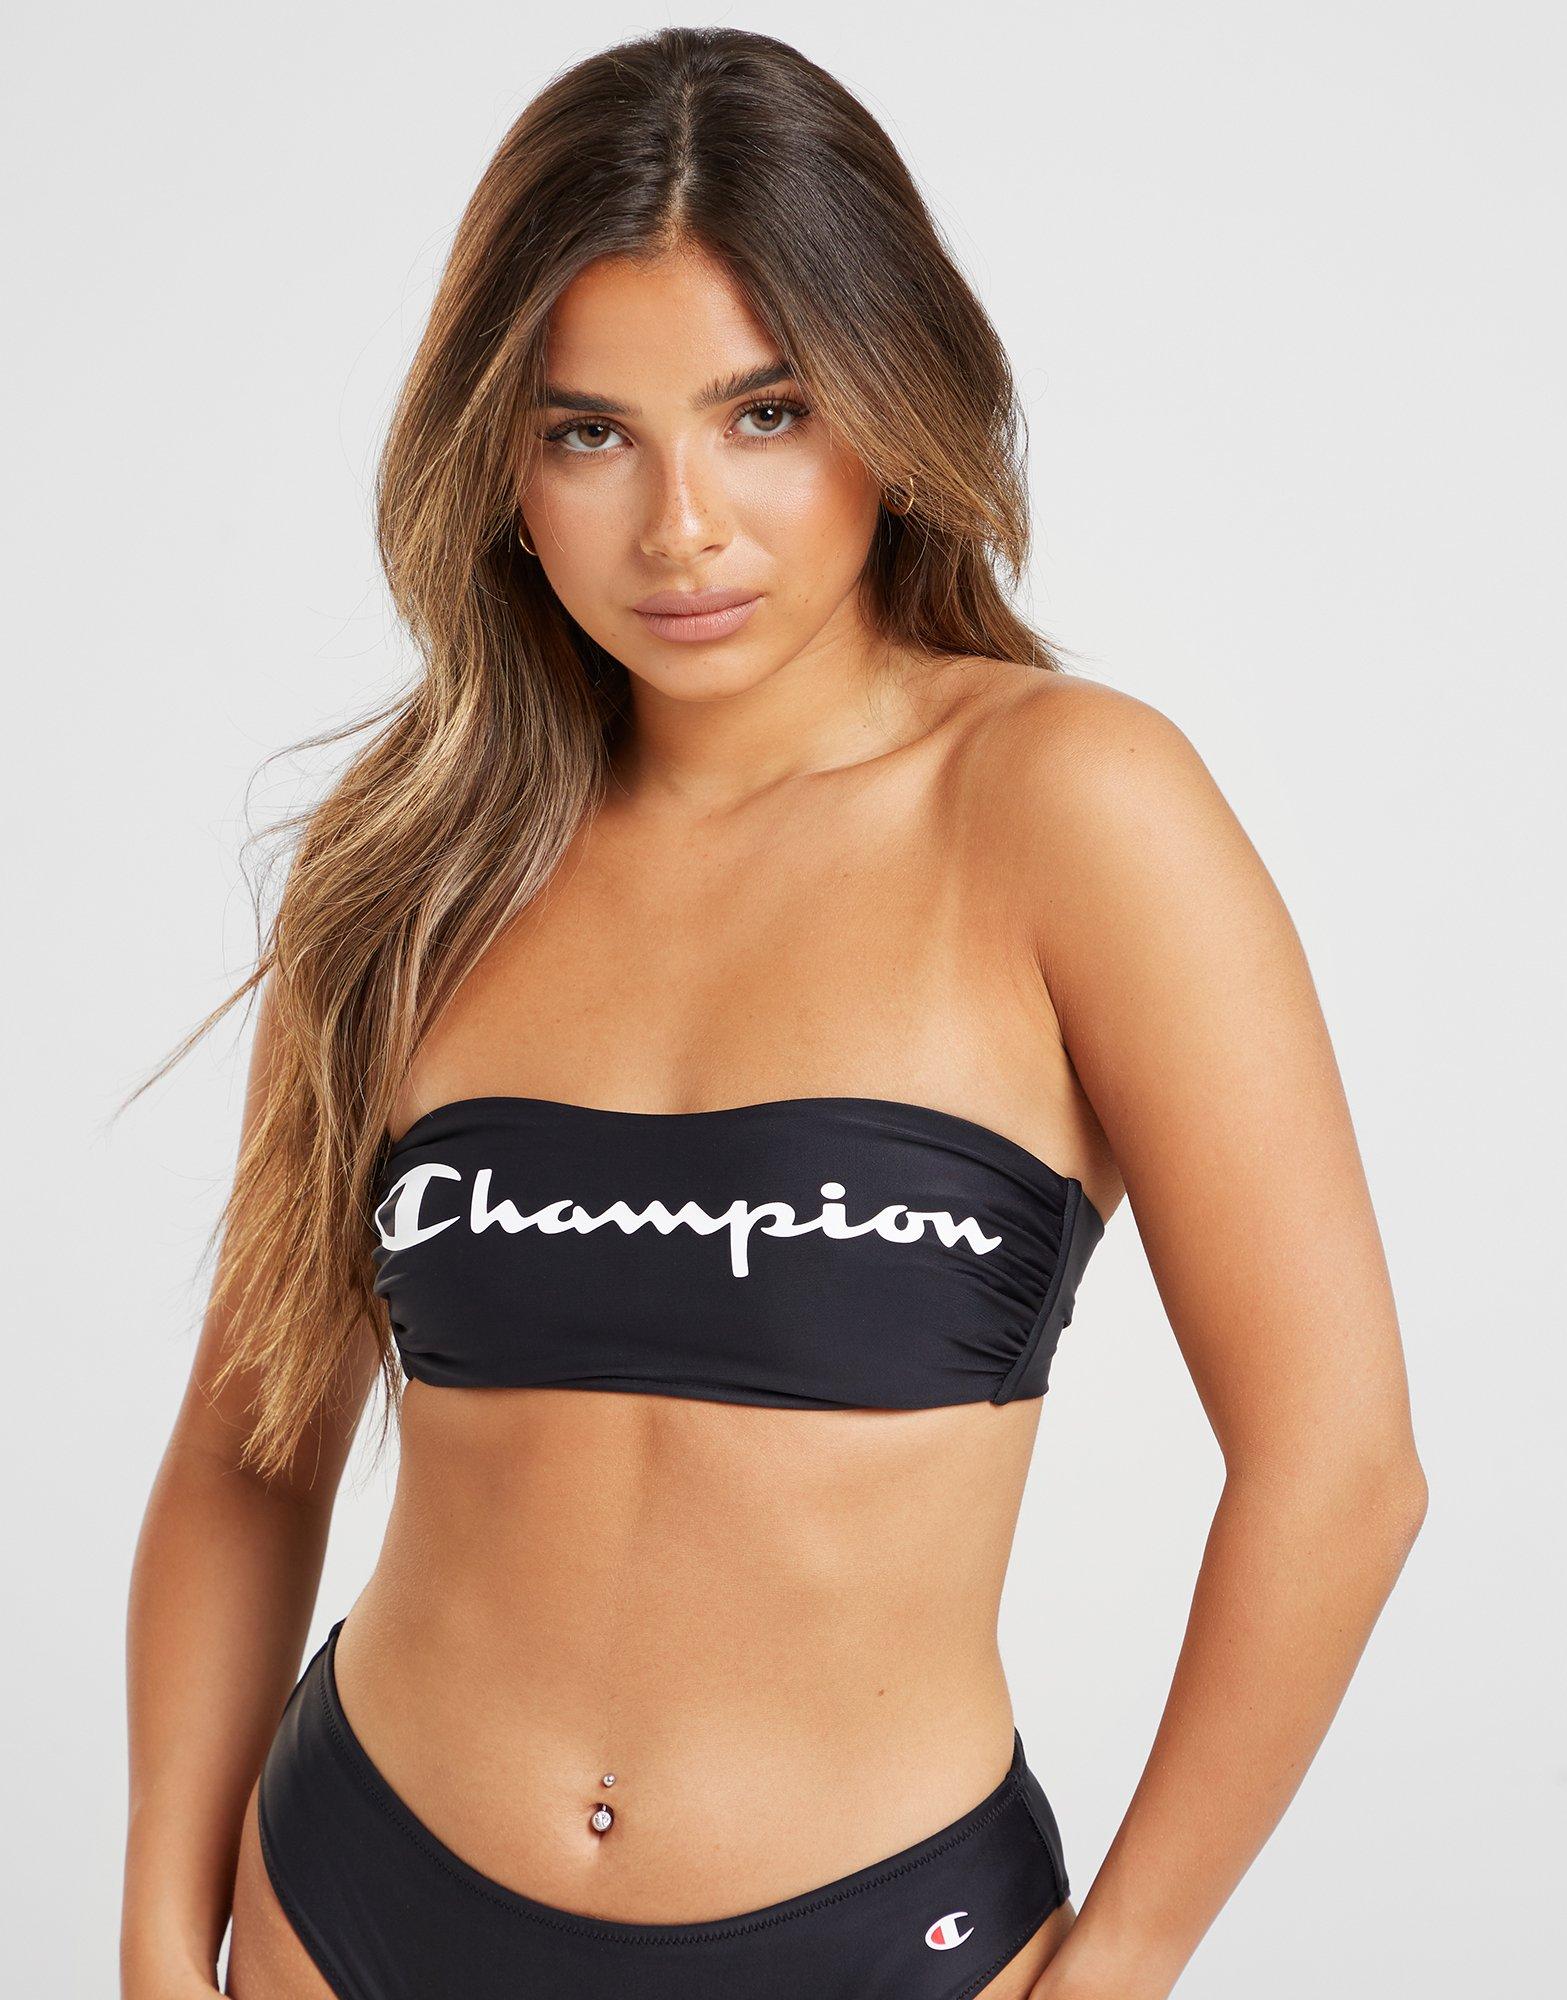 bikini champion